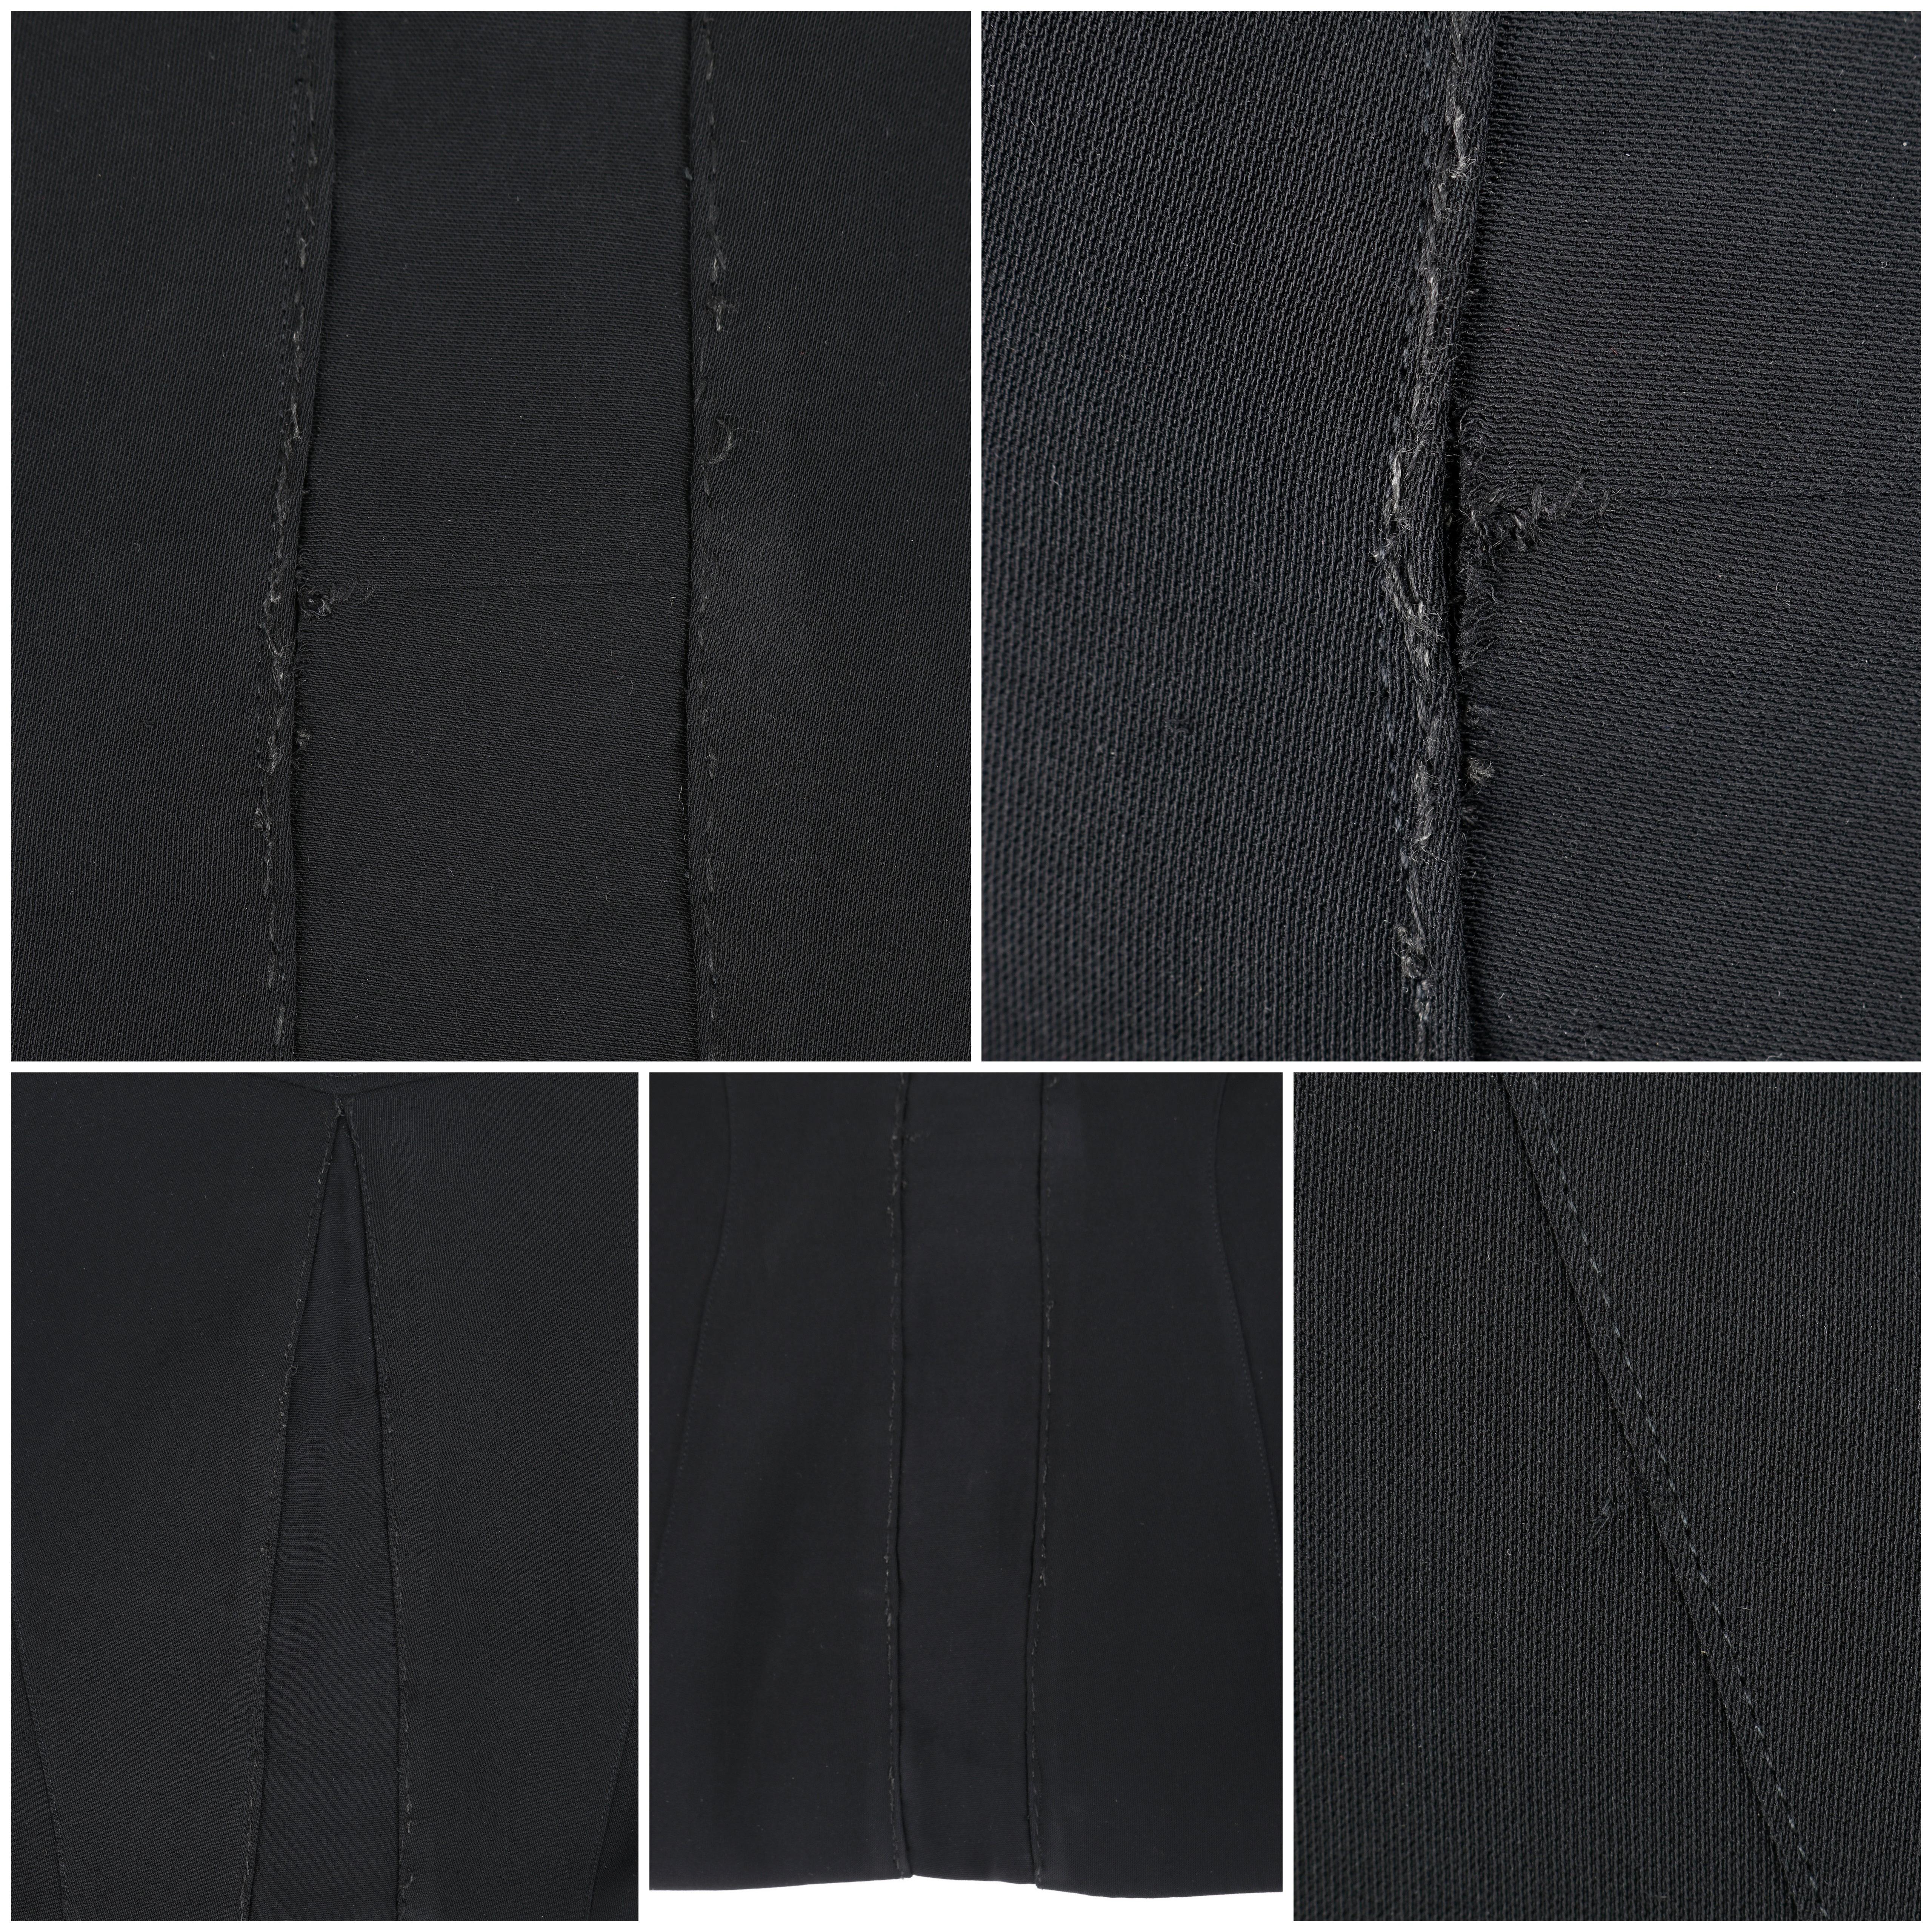 THIERRY MUGLER c.1990's Vtg Black Fringe High Collar Structured Zip Up Jacket  For Sale 9